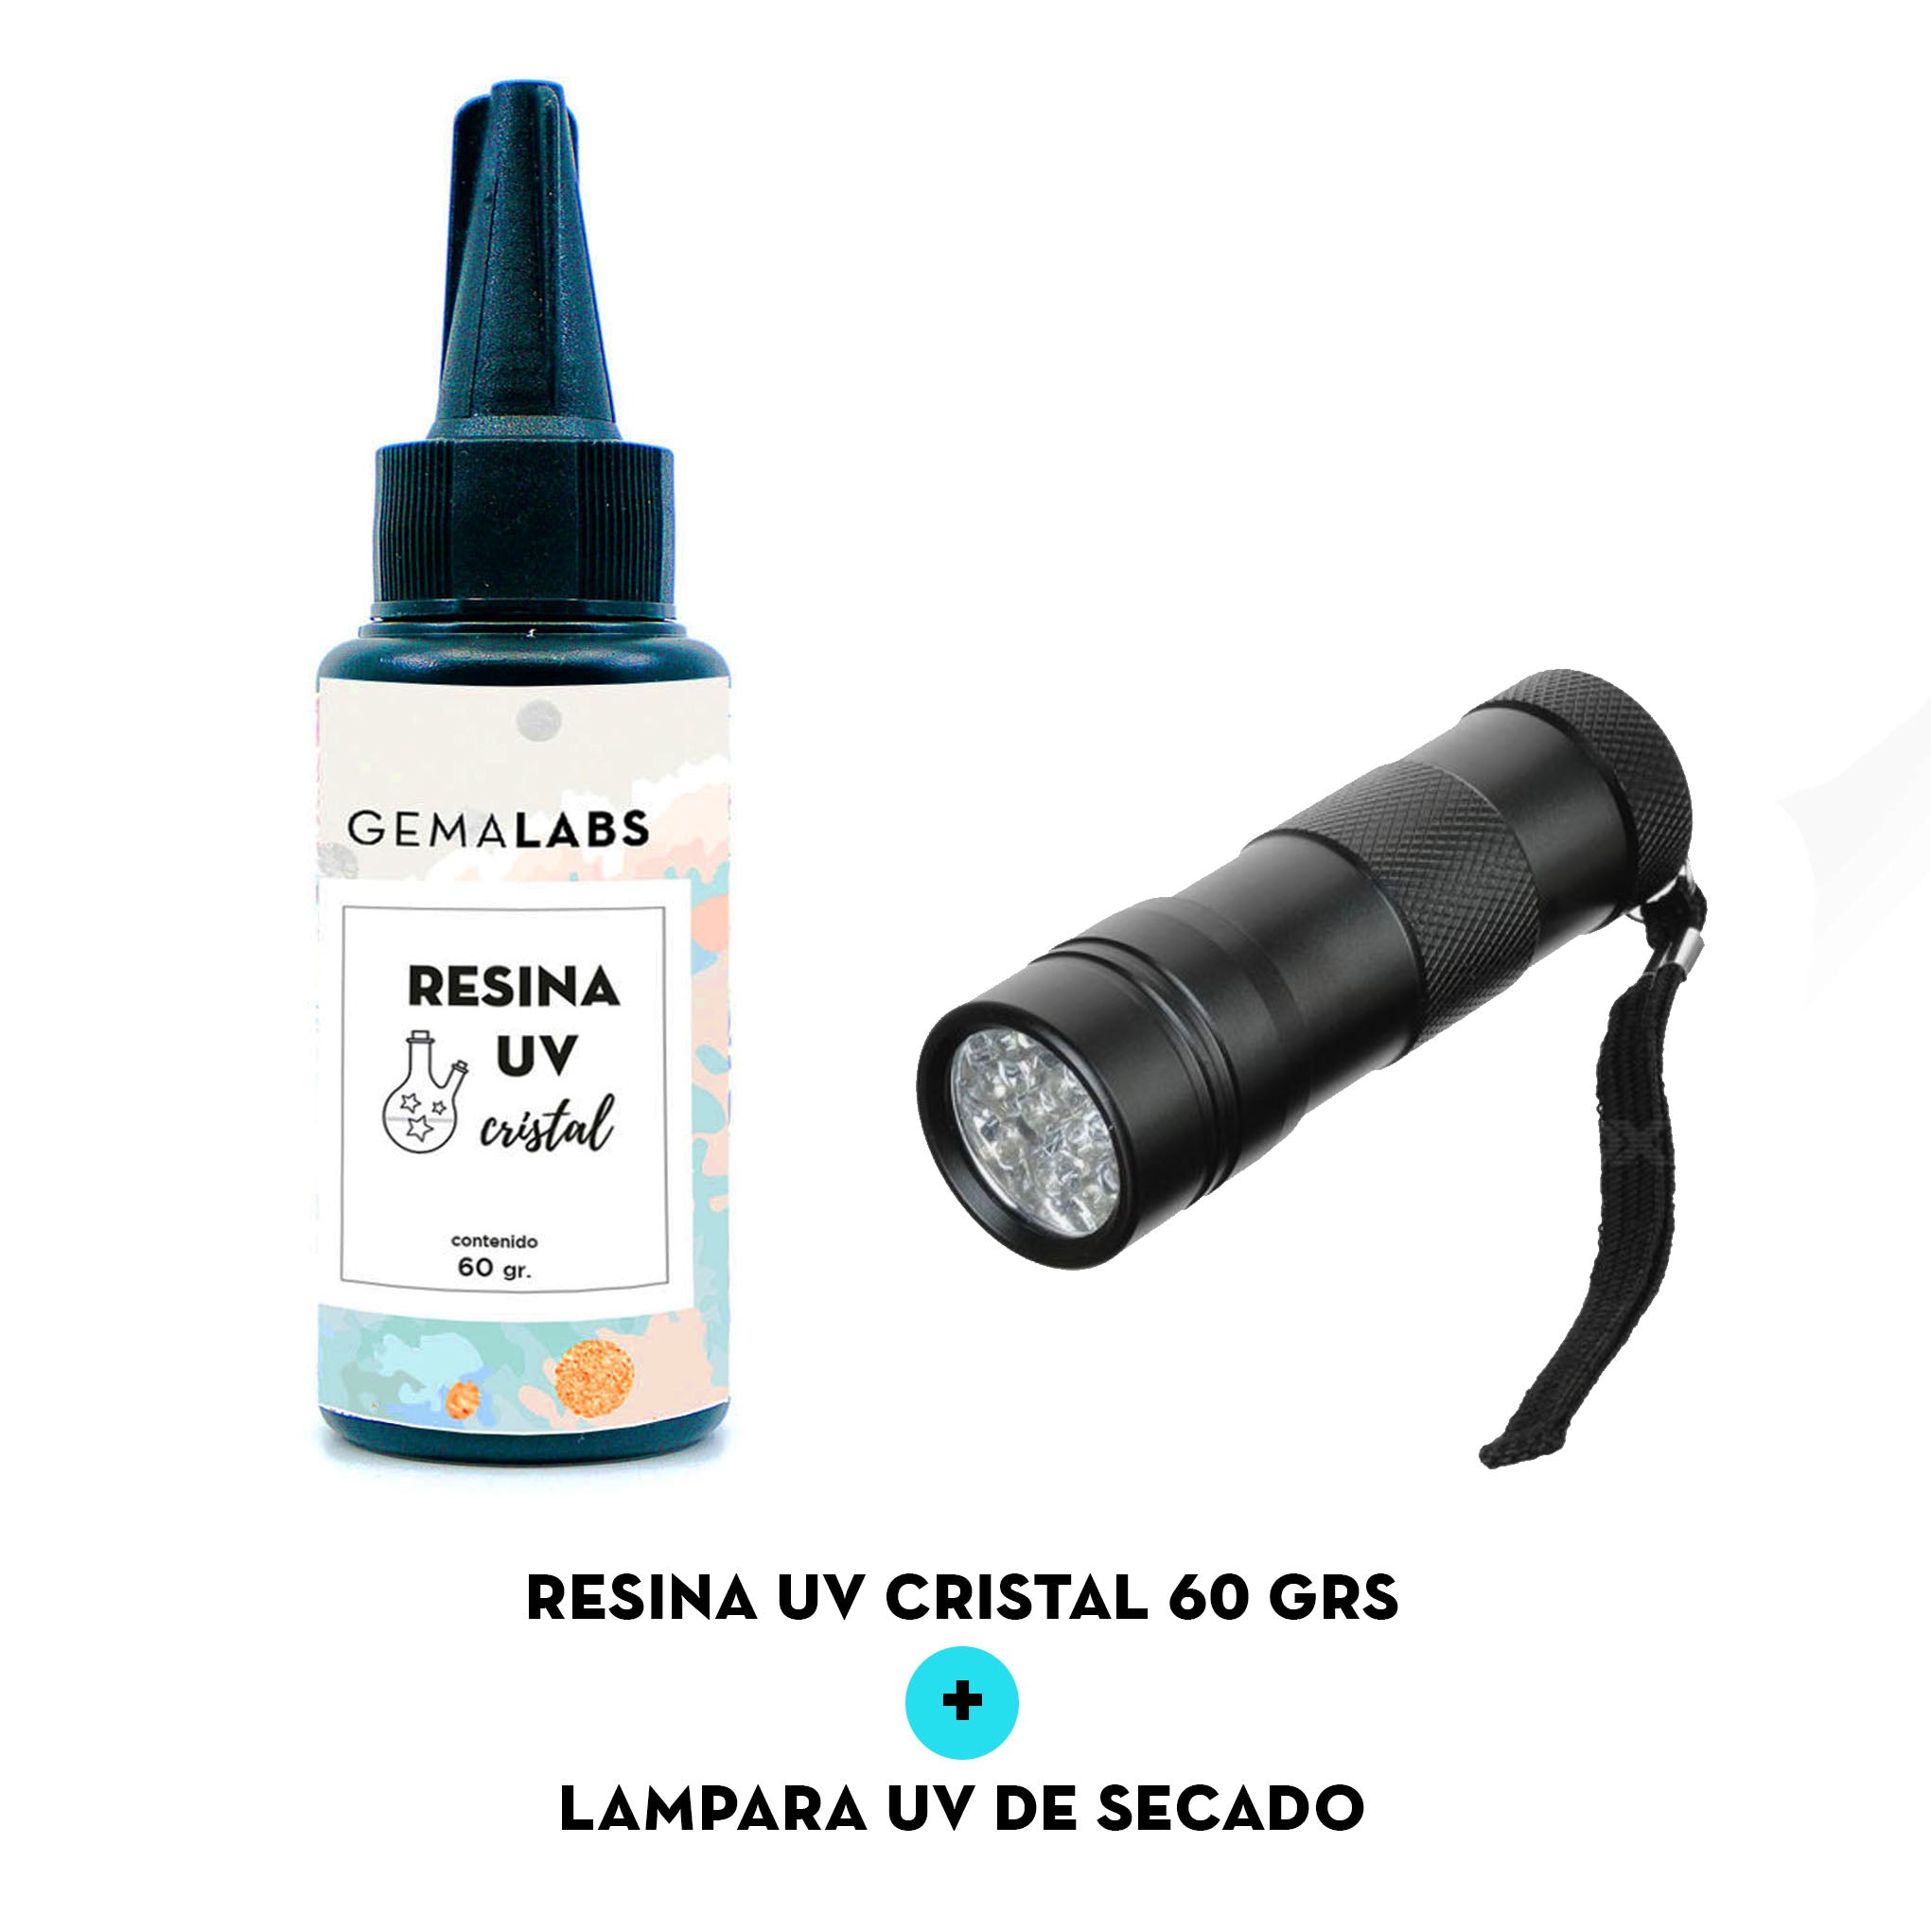 RESINA UV PARA MANUALIDADES / SECADO RAPIDO 100g.+ Linterna UV